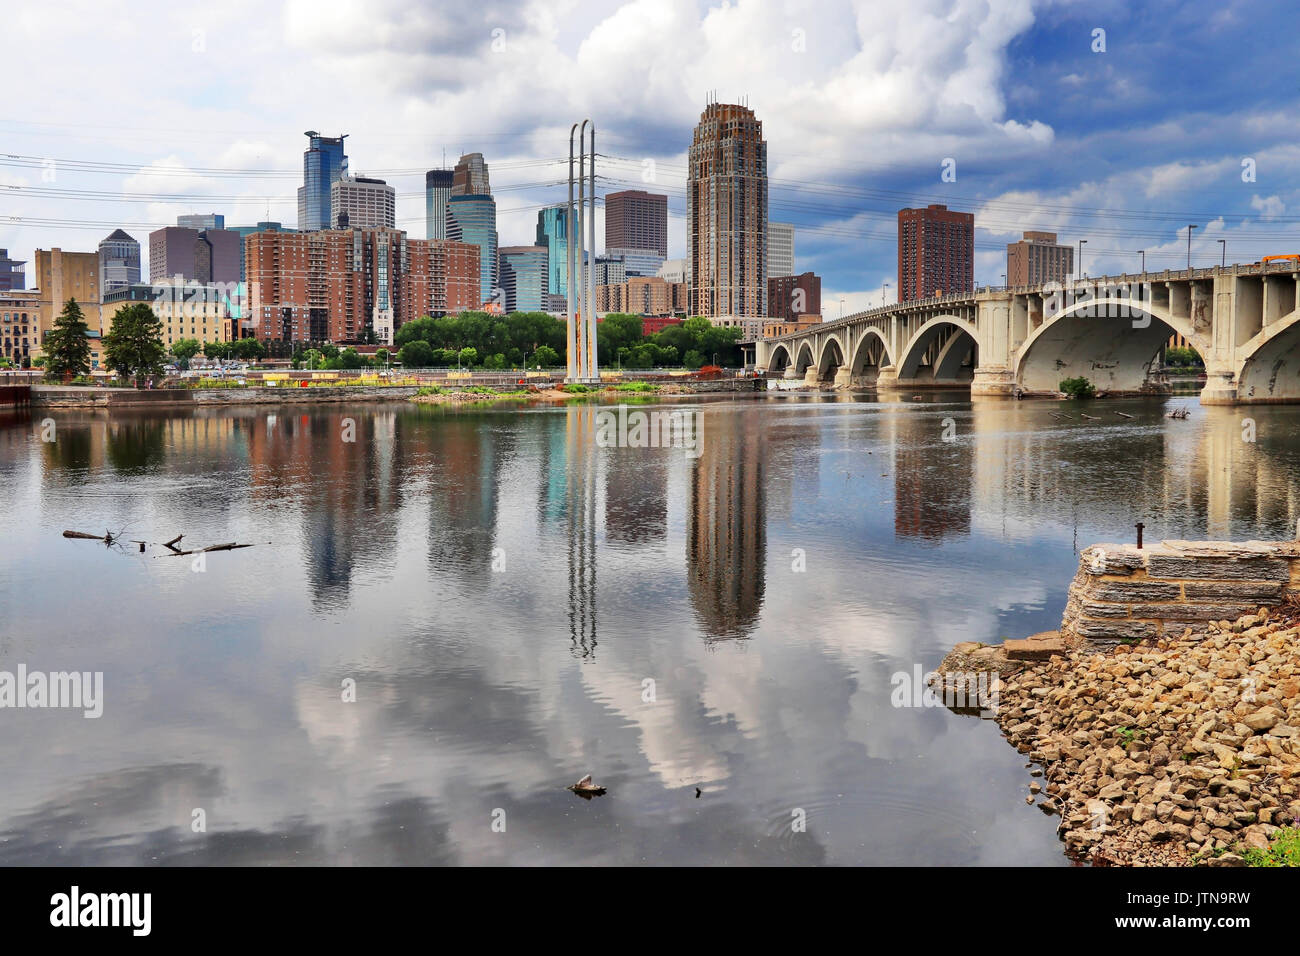 Perfil del centro de la ciudad de Minneapolis y la Tercera Avenida puente por encima del río Mississippi. Centro oeste del estado de Minnesota, EE.UU. Foto de stock